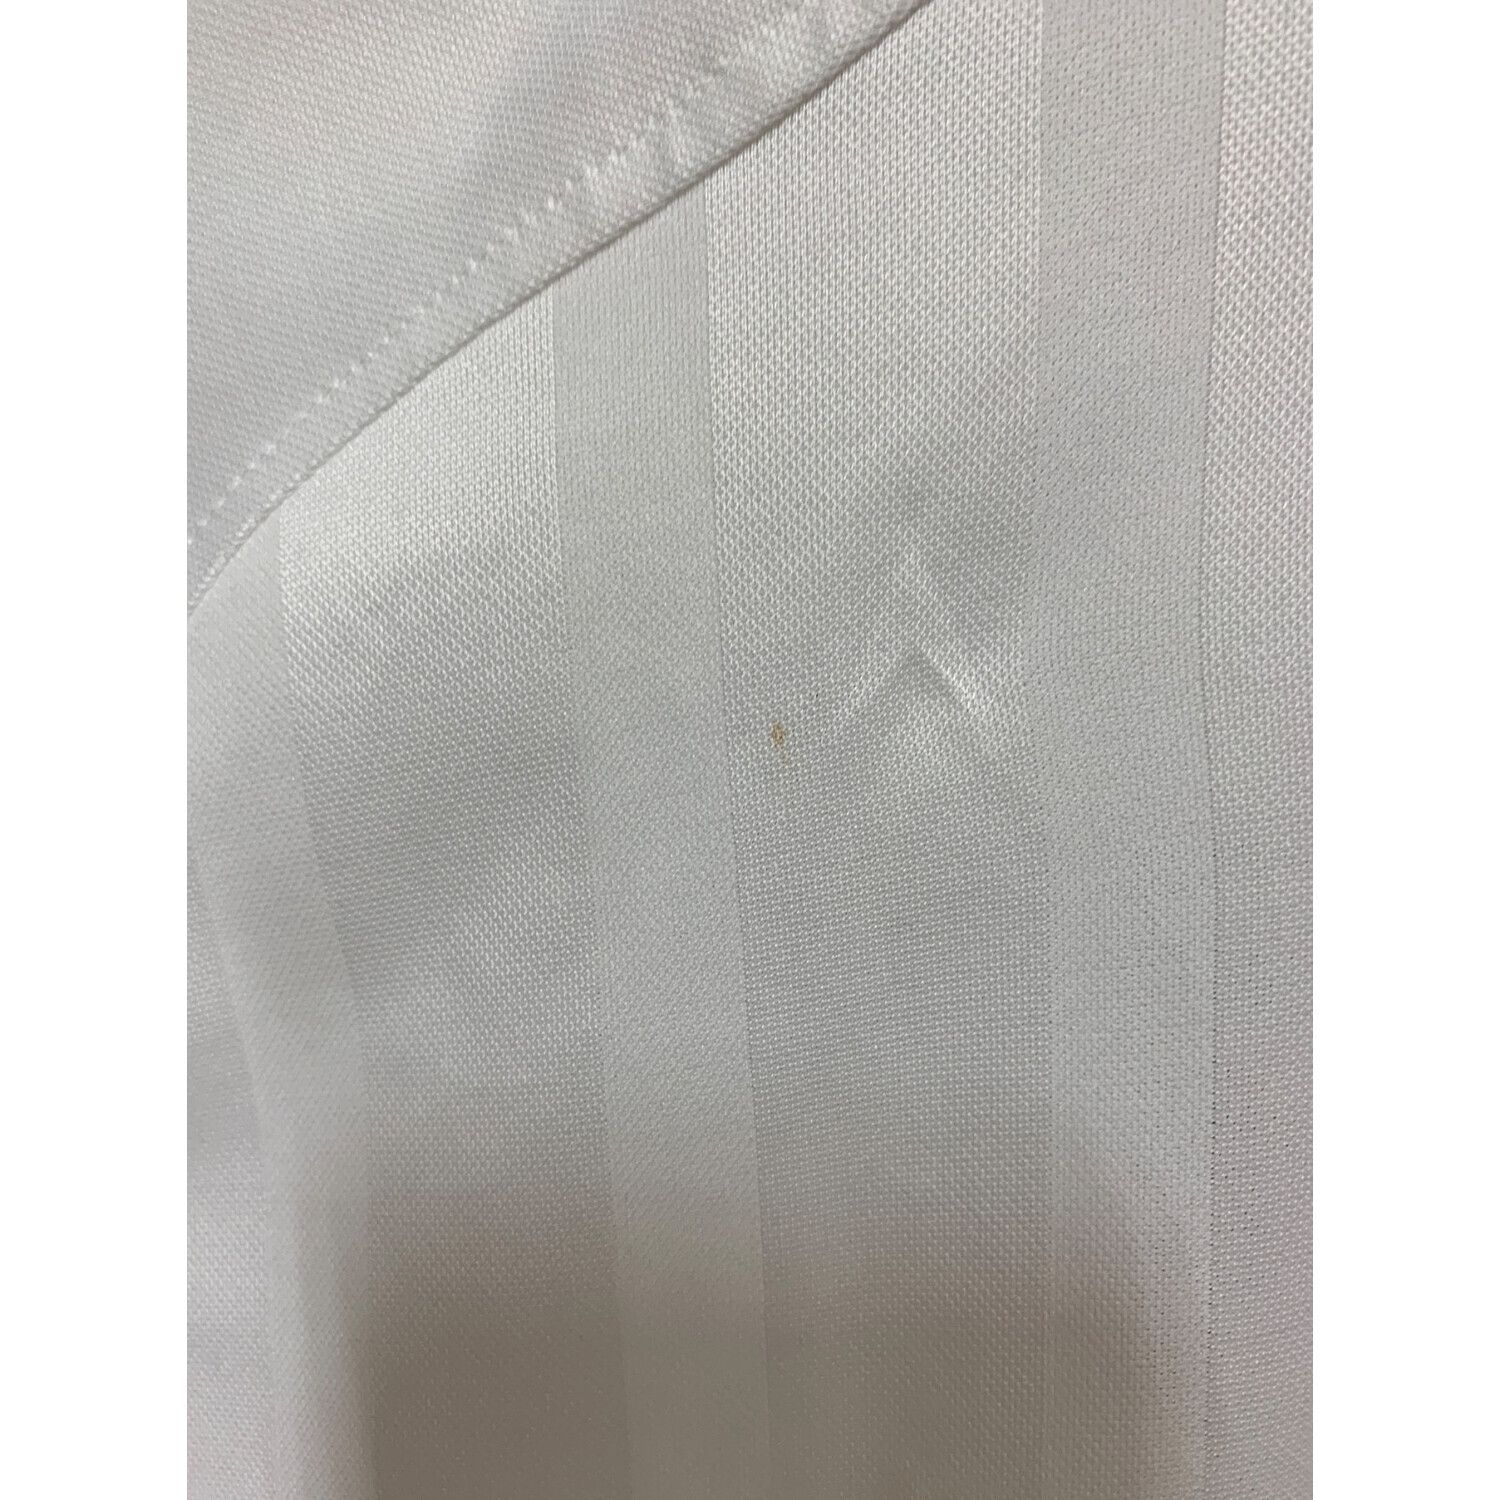 UMBRO (アンブロ) 00'sトレーニングシャツ メンズ SIZE XL ホワイト 